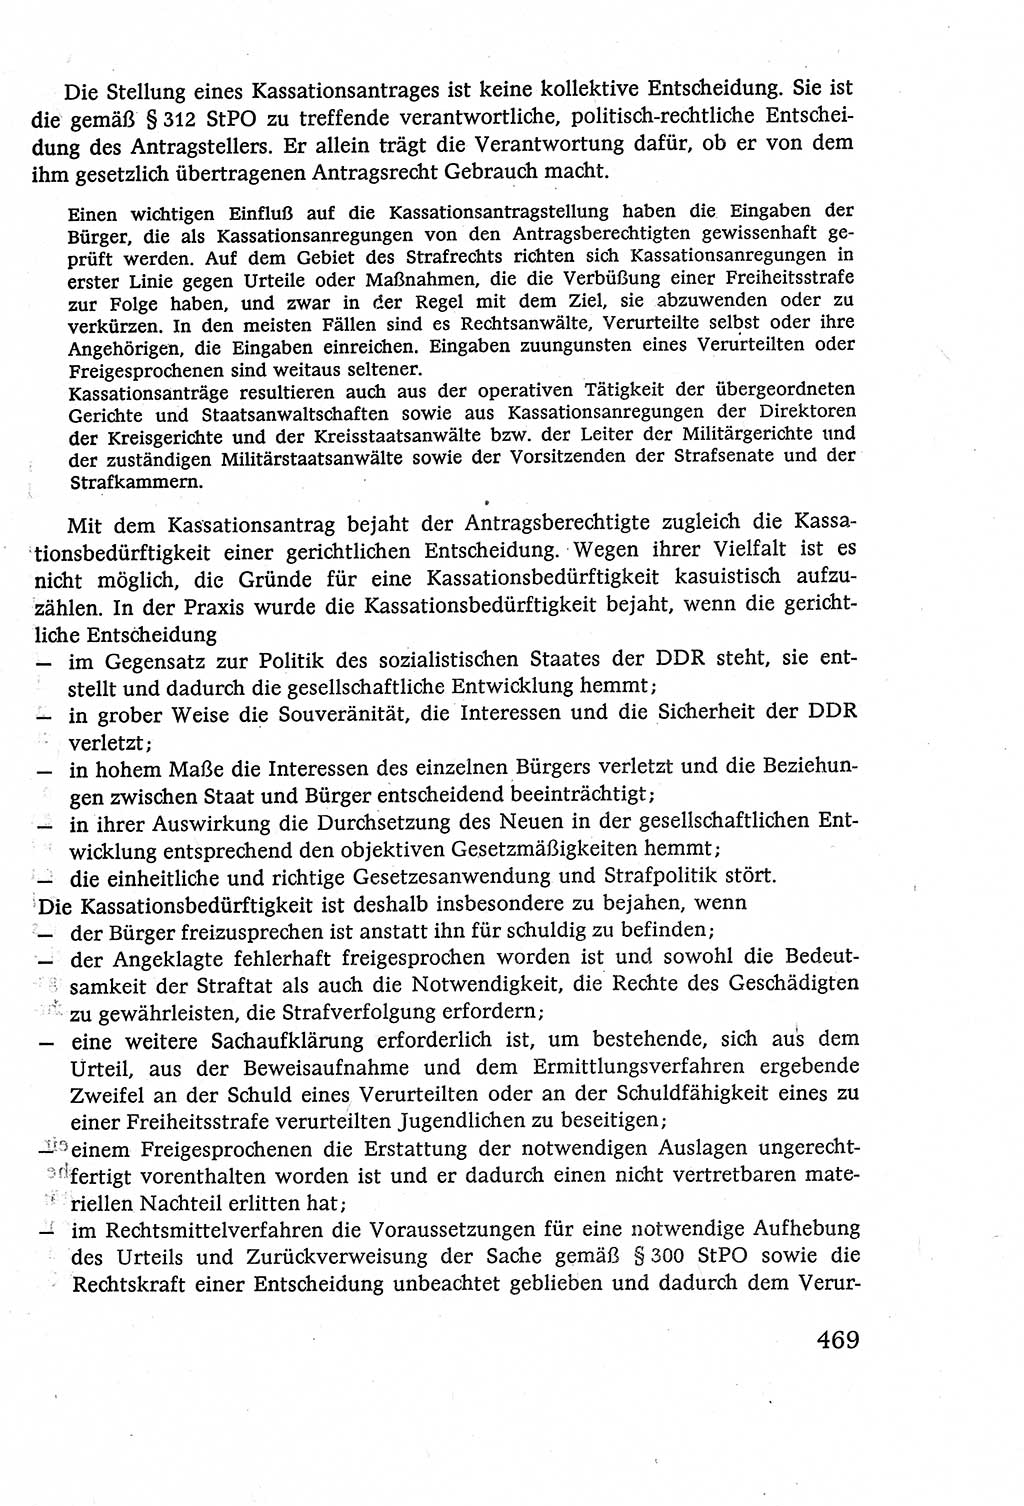 Strafverfahrensrecht [Deutsche Demokratische Republik (DDR)], Lehrbuch 1977, Seite 469 (Strafverf.-R. DDR Lb. 1977, S. 469)